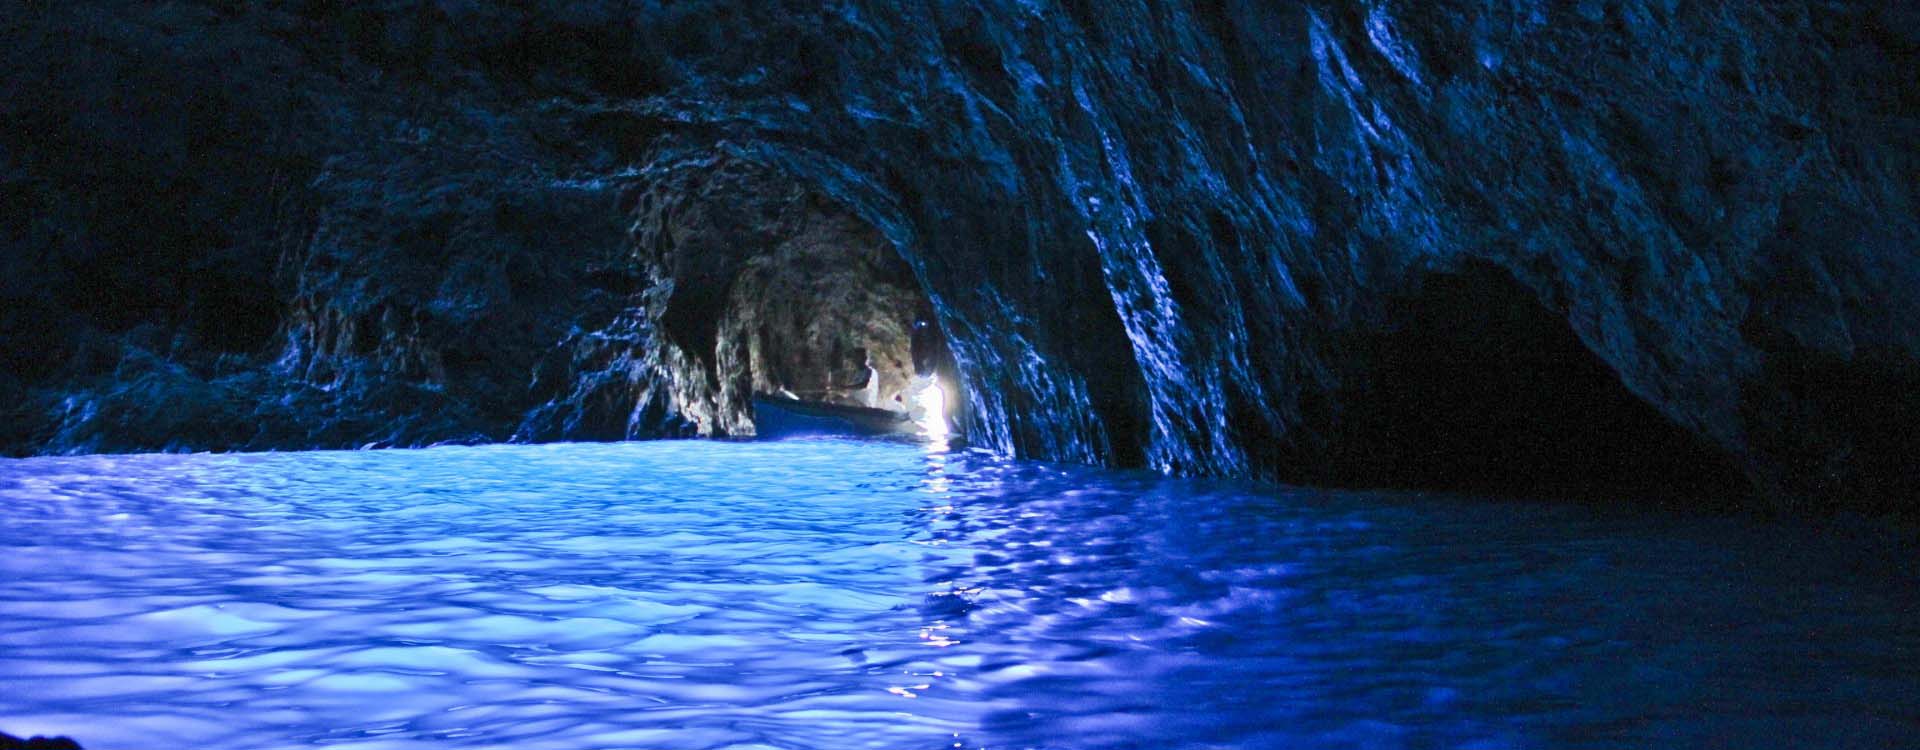 Blue-Grotto-Cave-in-Capri-Italy-2